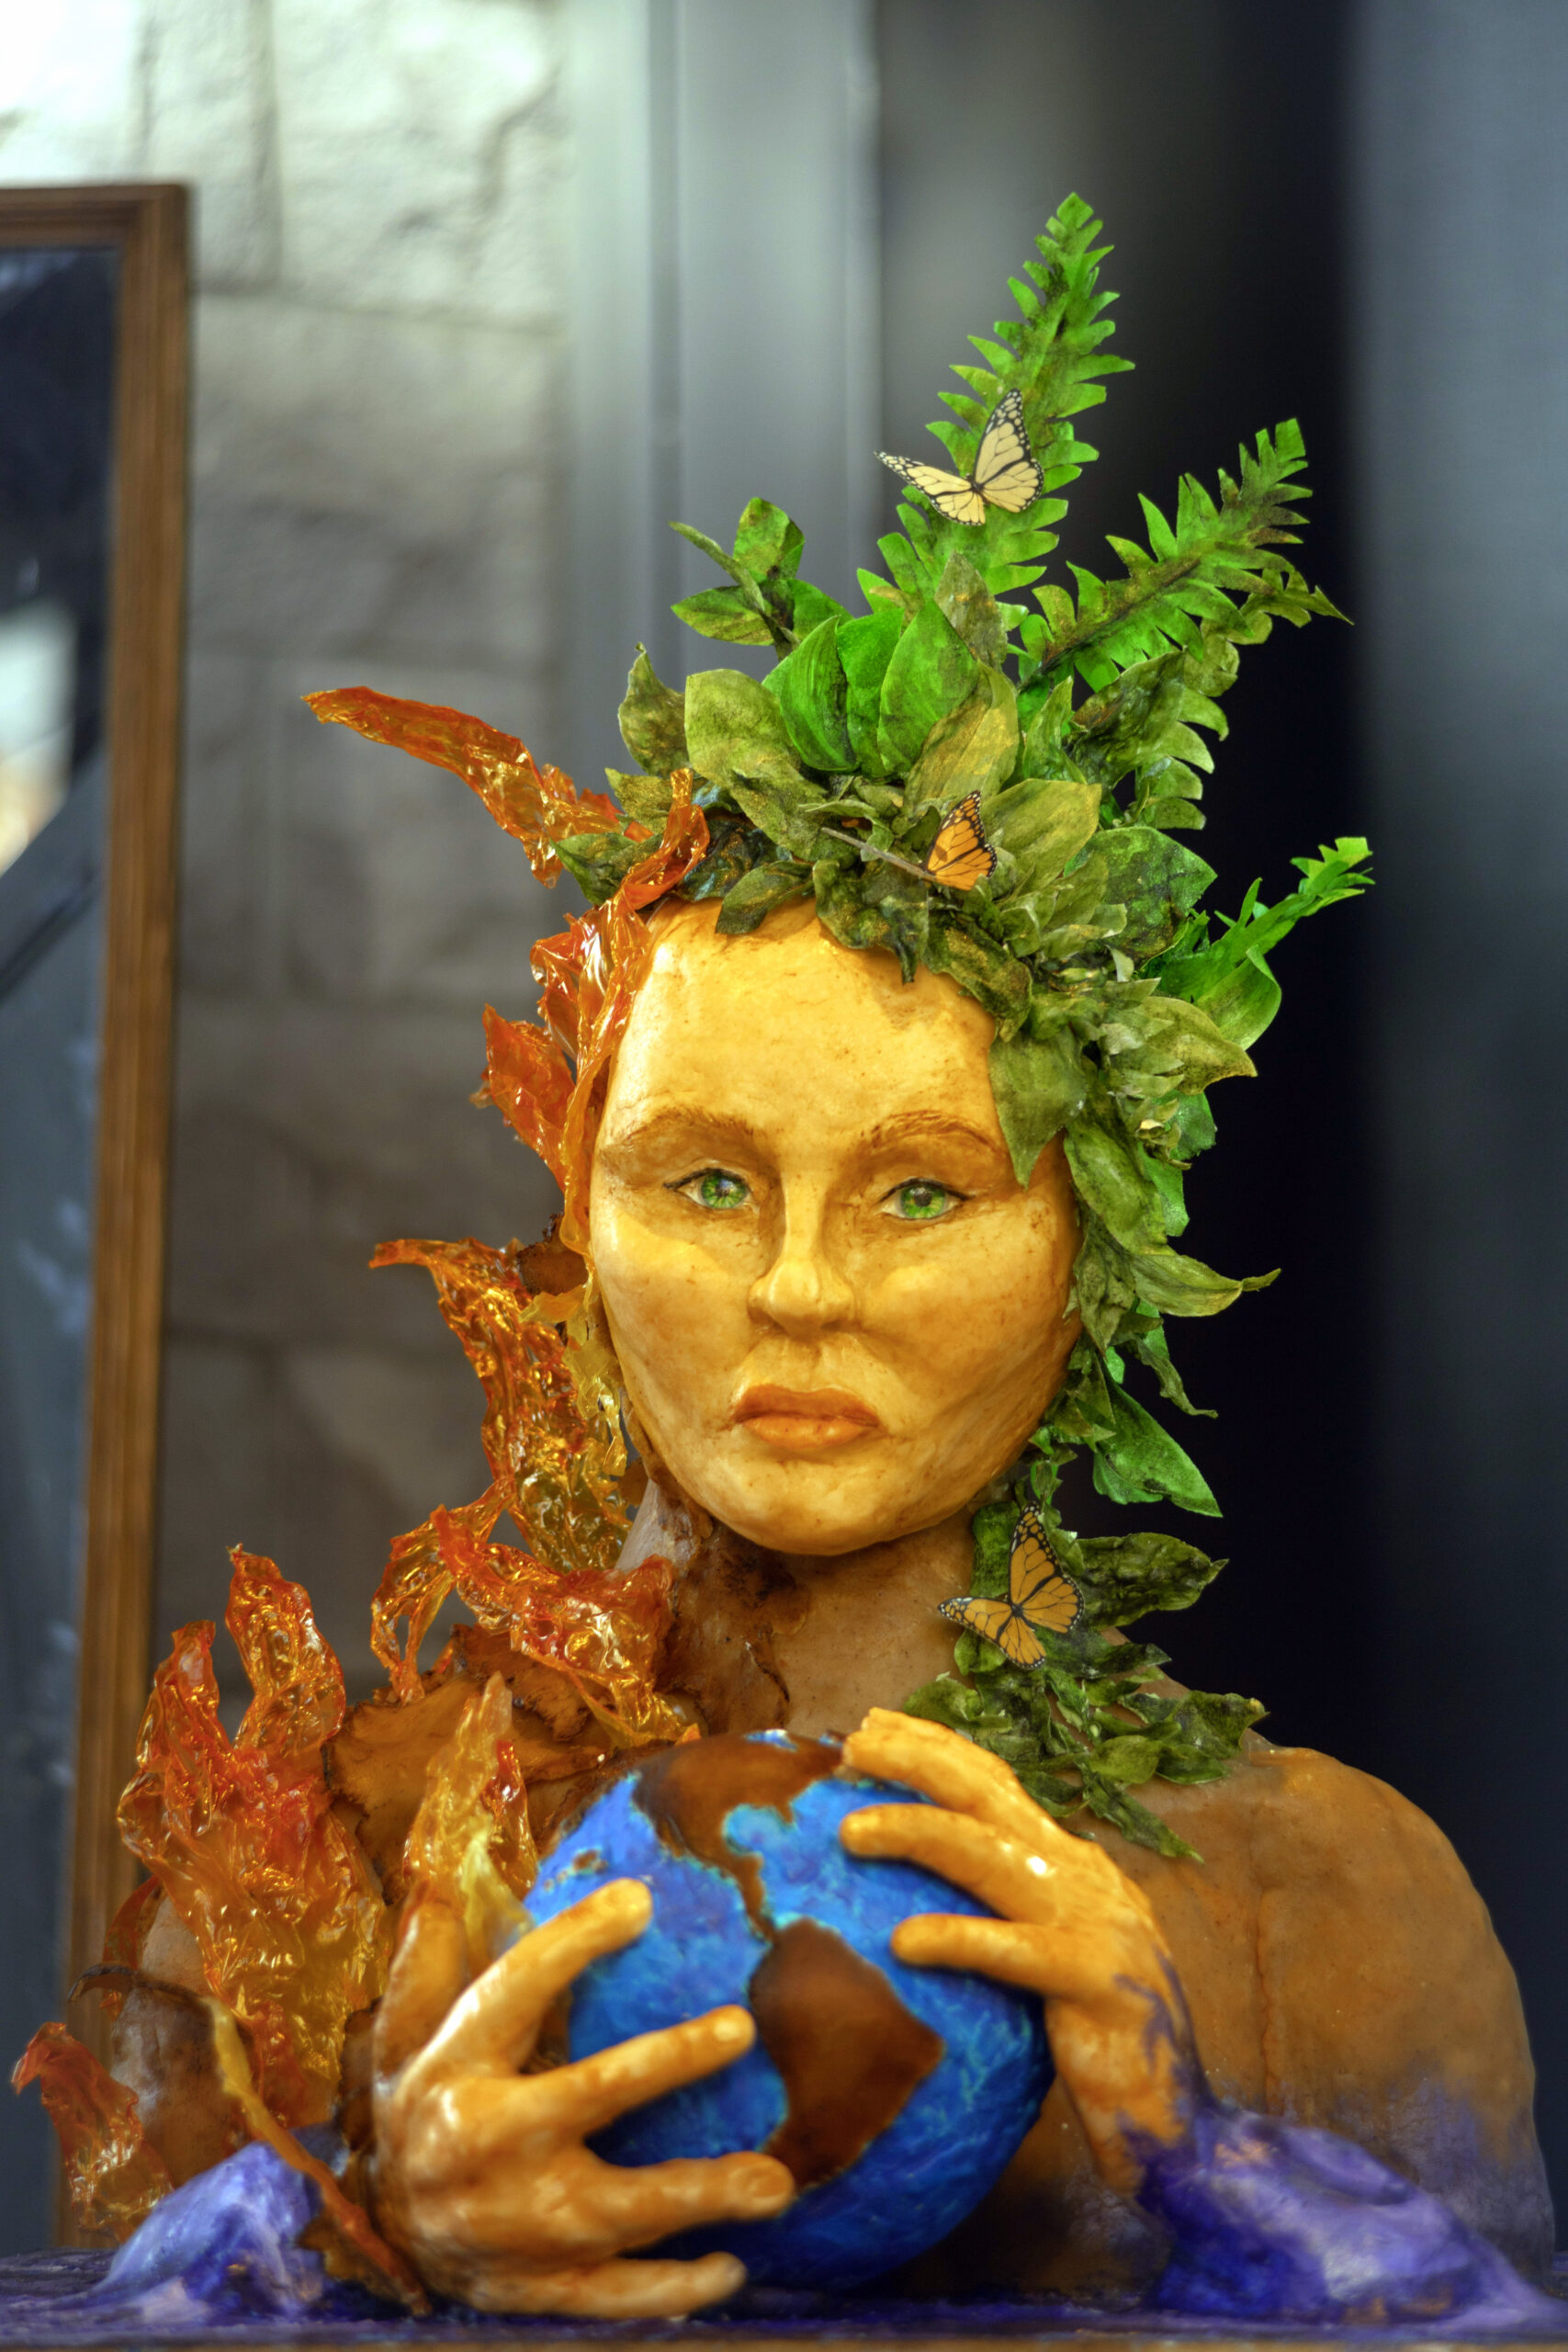 Femme tenant une balle ronde bleue avec le continent américain nord et sud dessiné et visible entre ses mains, sa chevelure est faite de feuilles vertes sur la droite et de feuilles d'automne sur la gauche